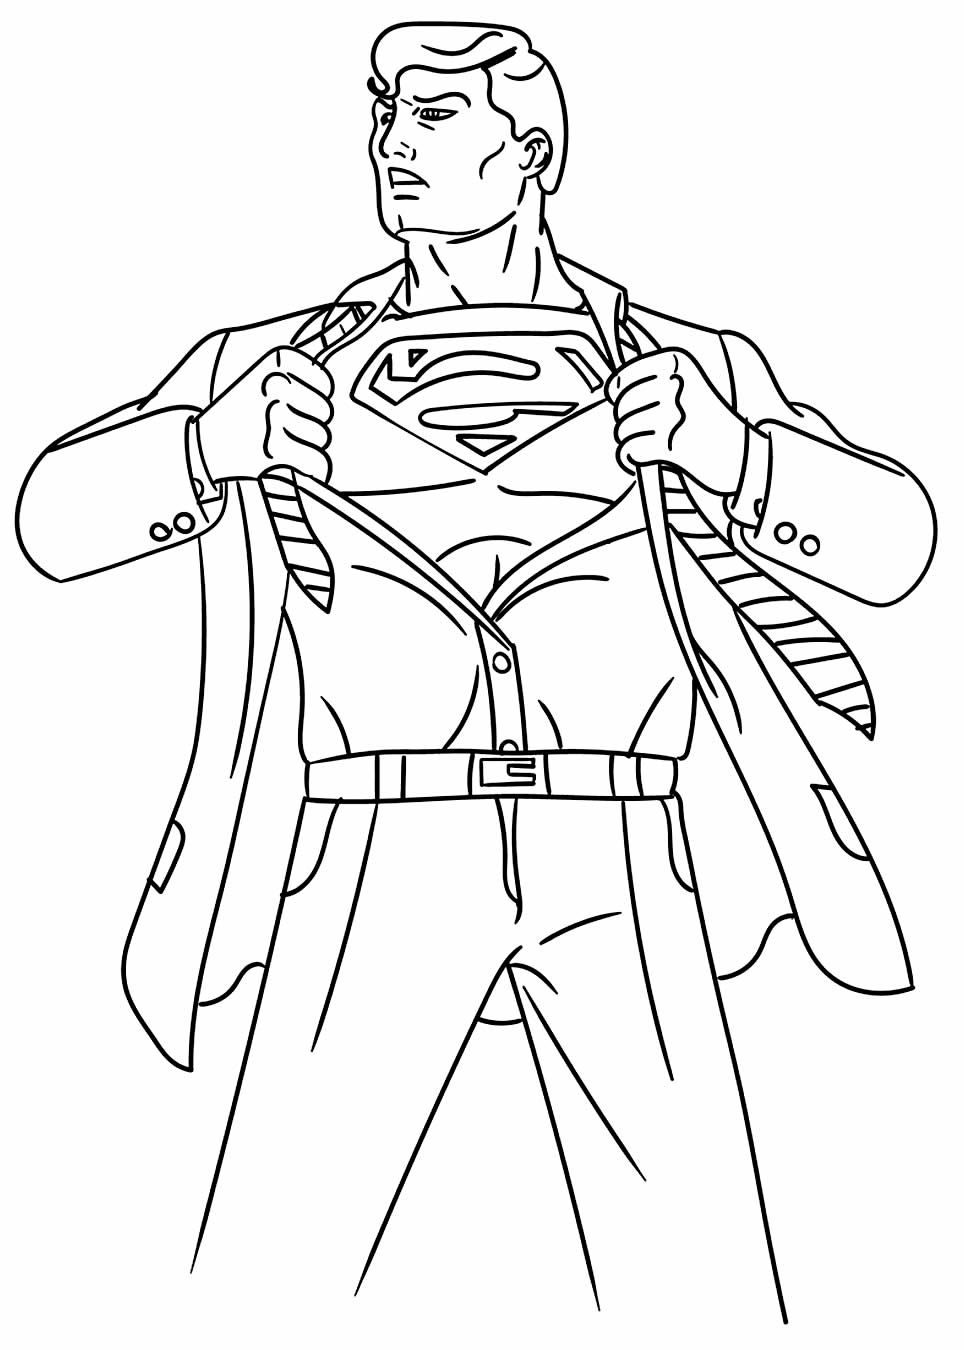 Desenho do Super Homem para colorir